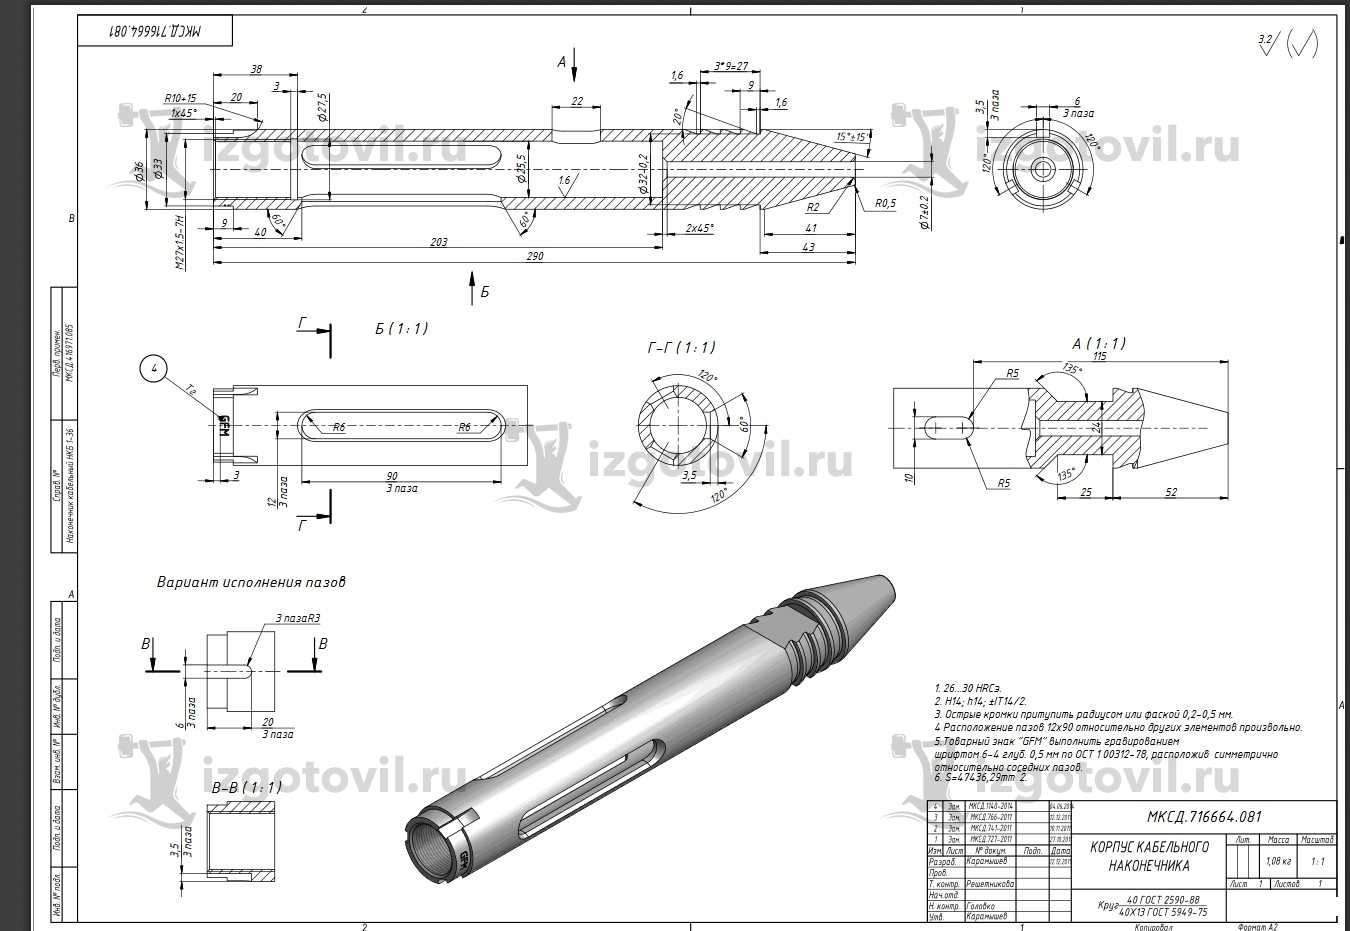 Изготовление цилиндрических деталей (корпус кабельного наконечника)